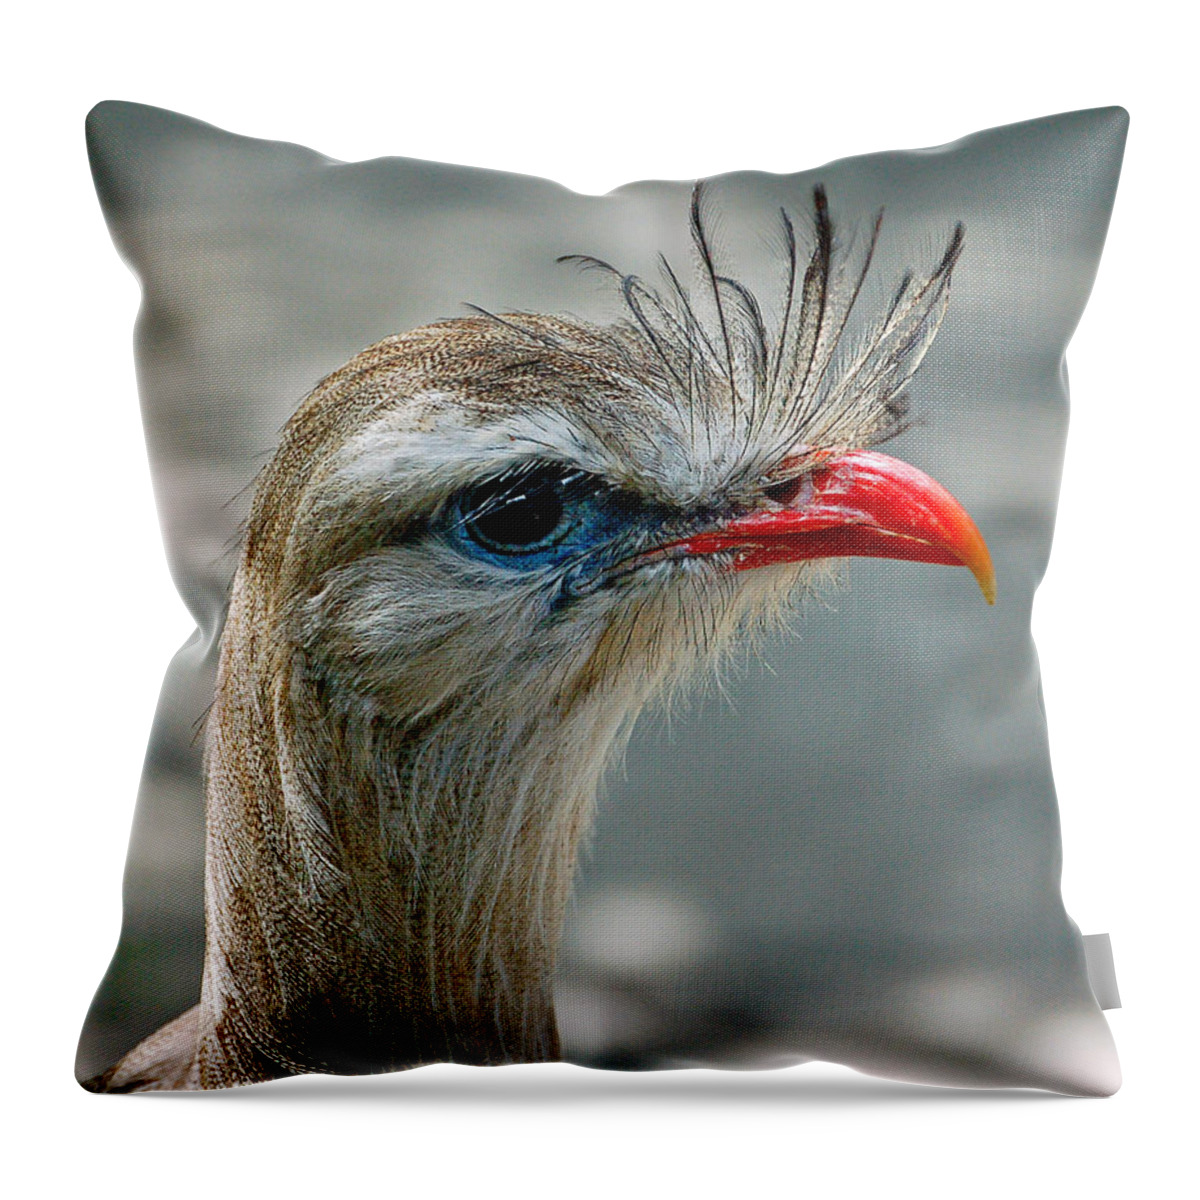 Bird Throw Pillow featuring the photograph Seriema Bird Alert by Donna Proctor